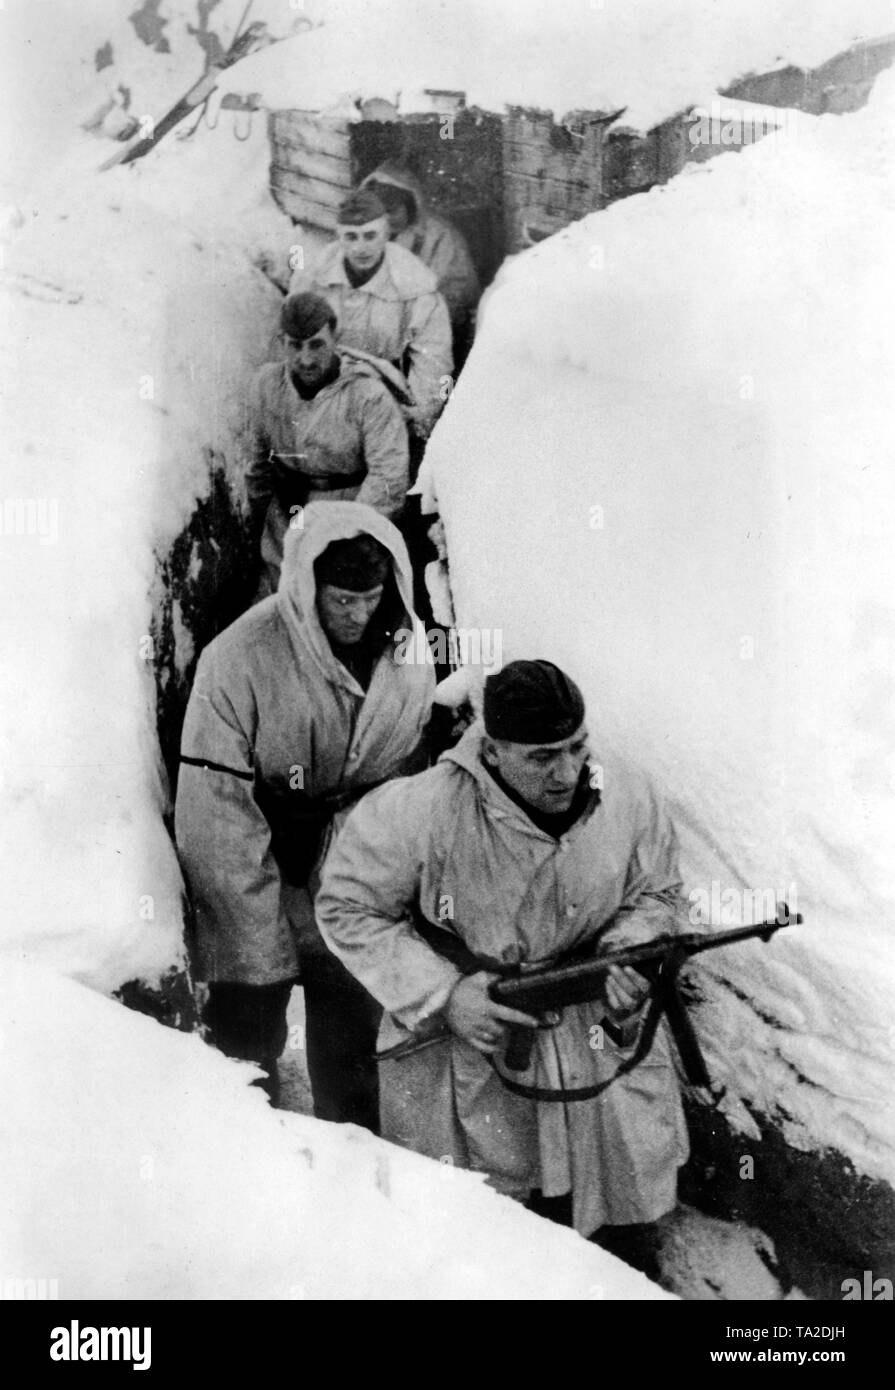 Deutsche Soldaten im Winter camouflage Kleidung laufen durch einen Graben südlich vom See Ilmensee. Die in der vorderen hält eine Maschinenpistole 40 an der highport. Foto der Propaganda Firma (PK): kriegsberichterstatter Etzold. Stockfoto